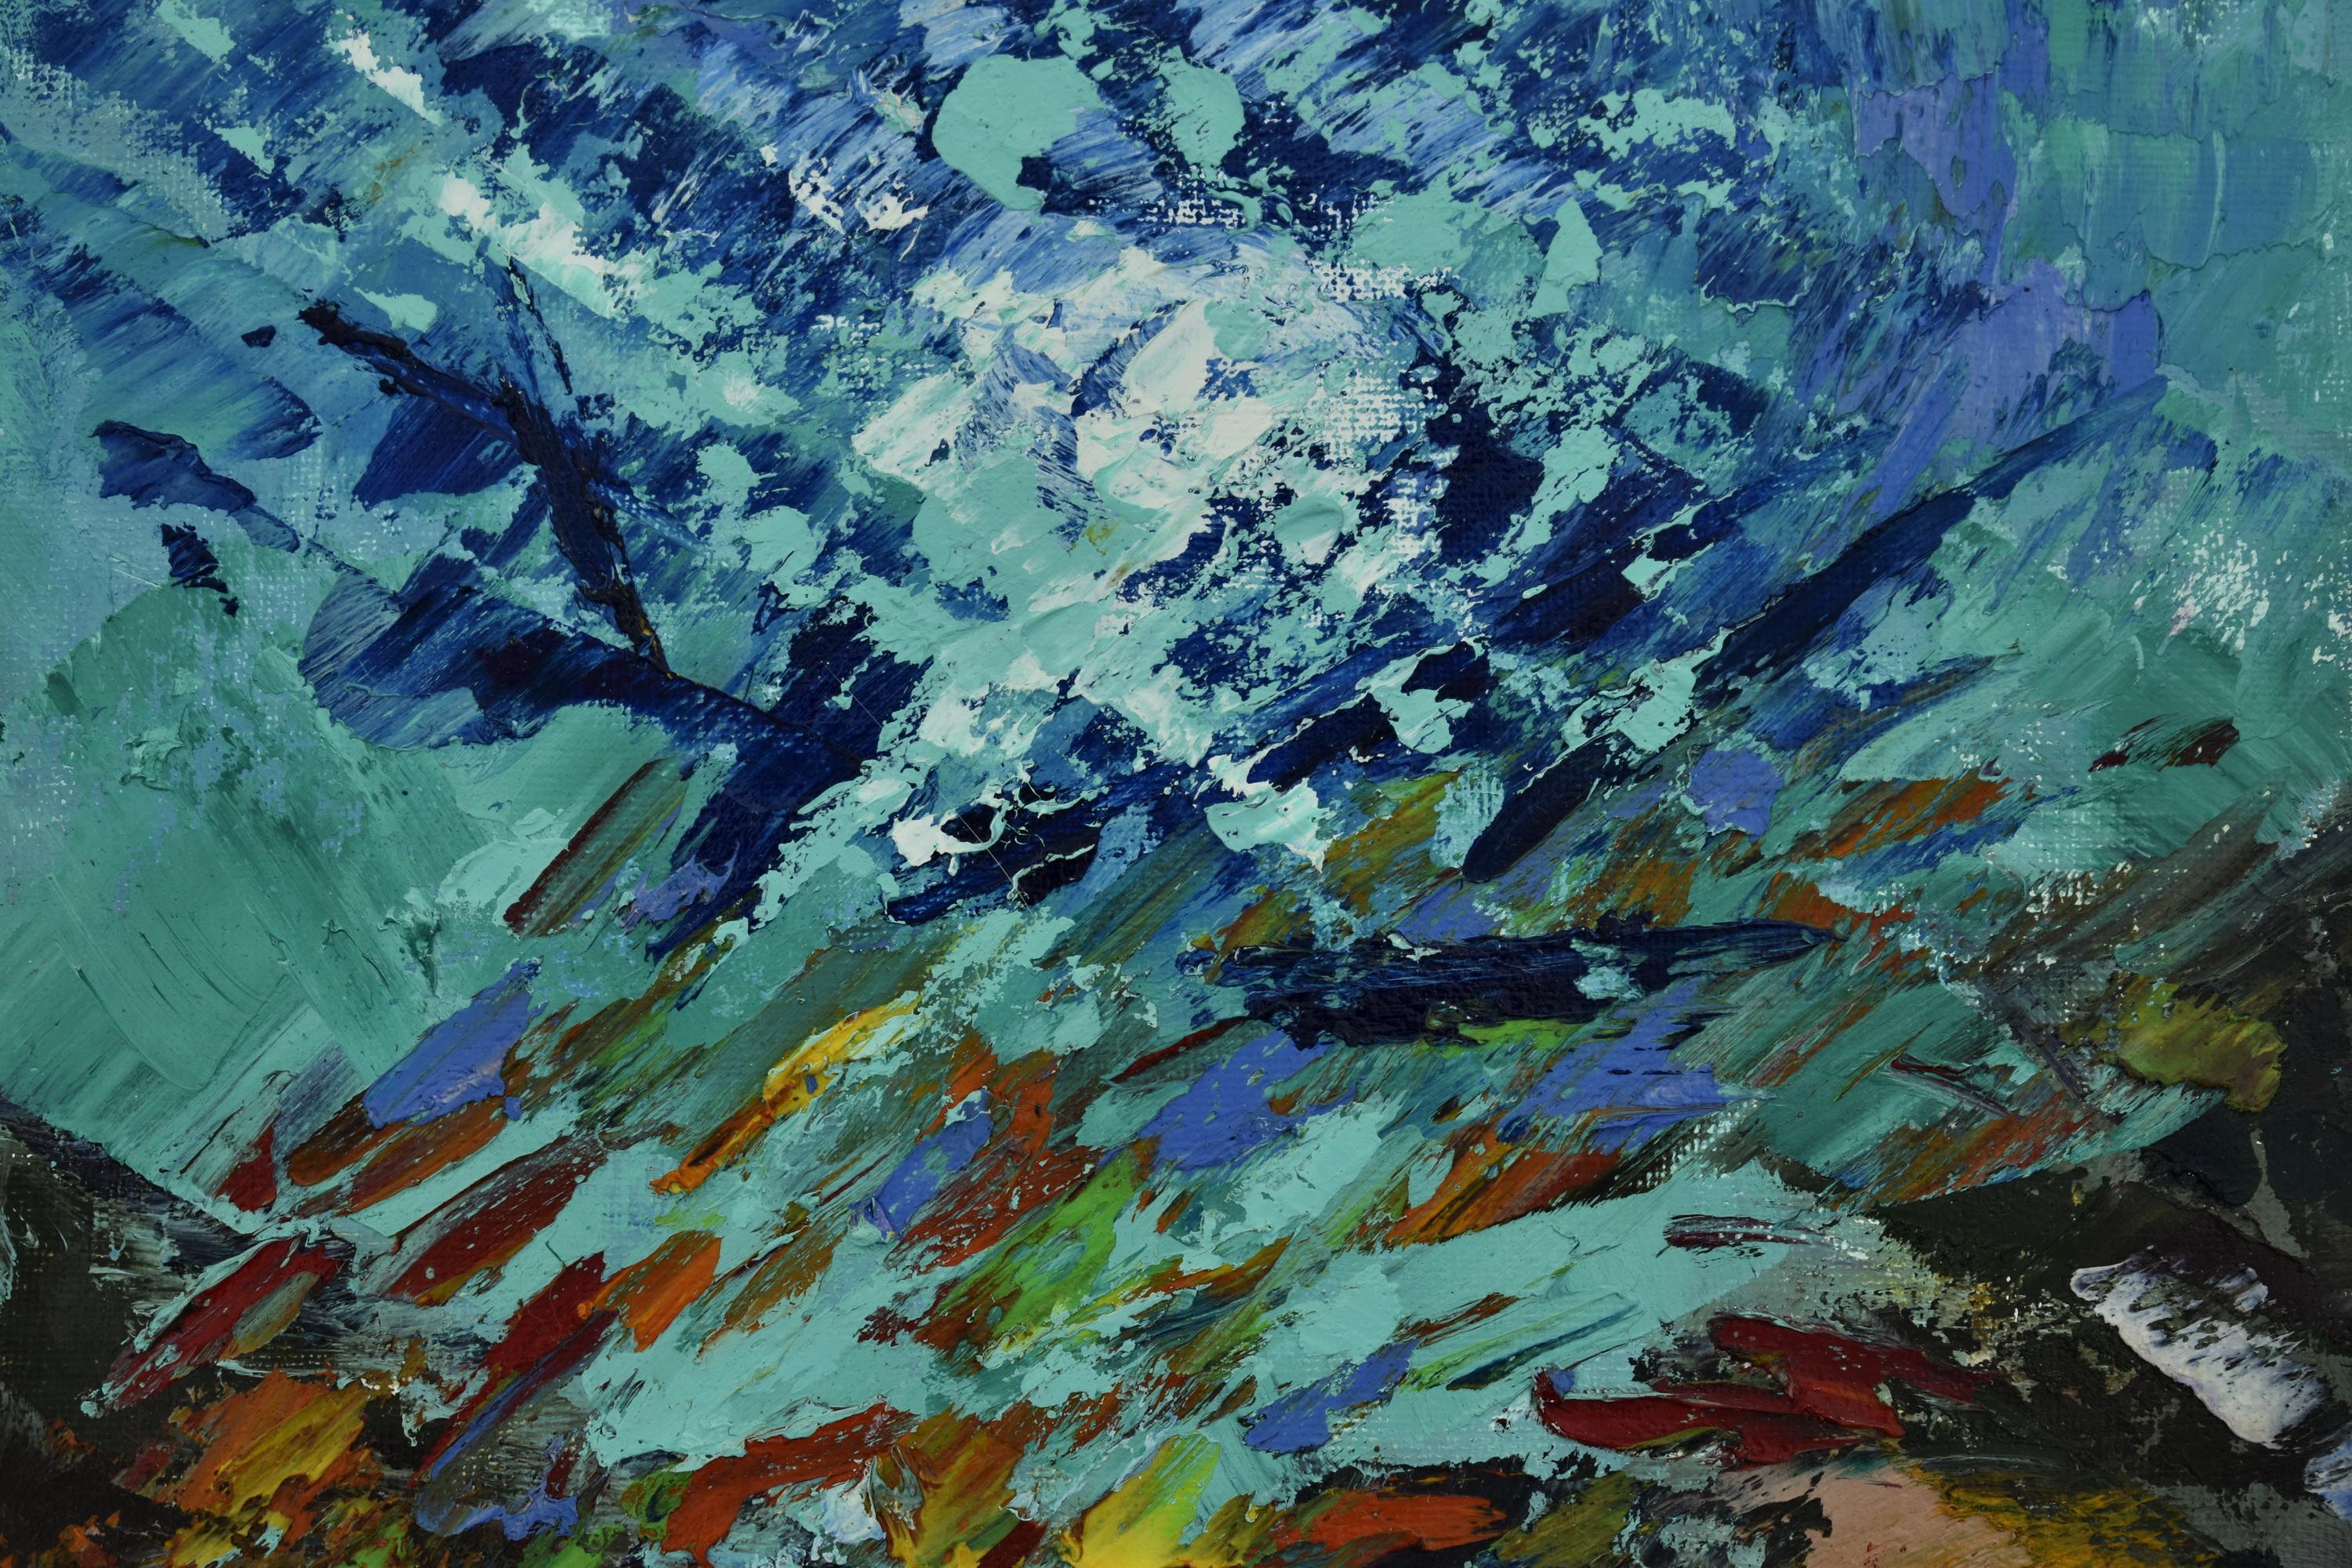 UNDERWATER PAINTING CORAL REEF a été réalisé sous l'eau - Impressionnisme abstrait Painting par Olga Nikitina